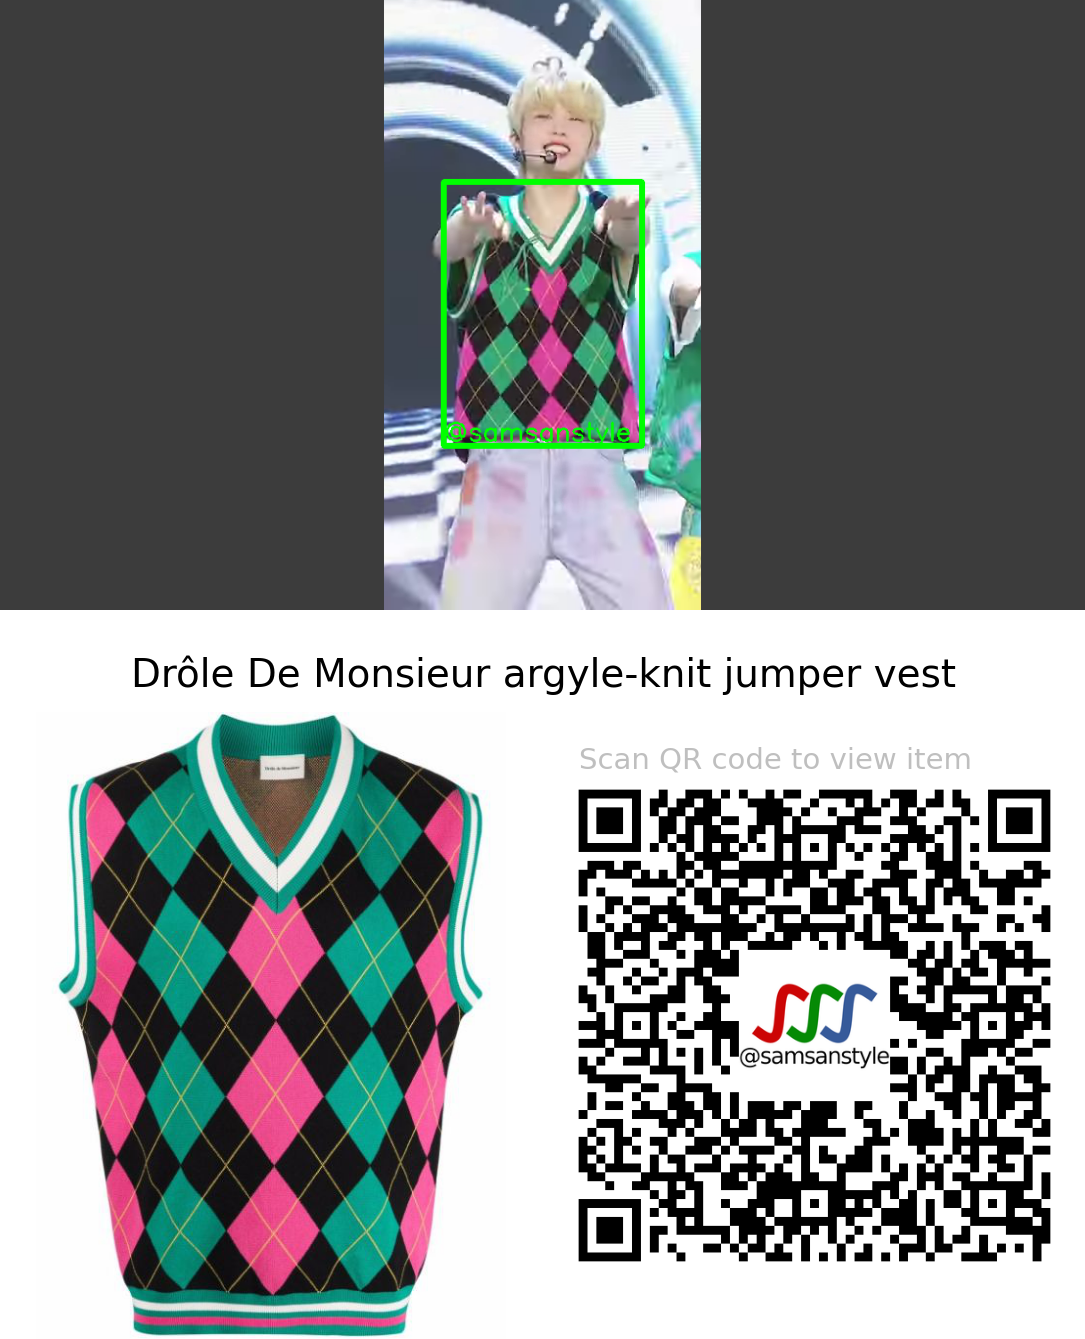 BLITZERS Juhan | SLIDE SBS MTV The Show | Drôle De Monsieur argyle-knit jumper vest